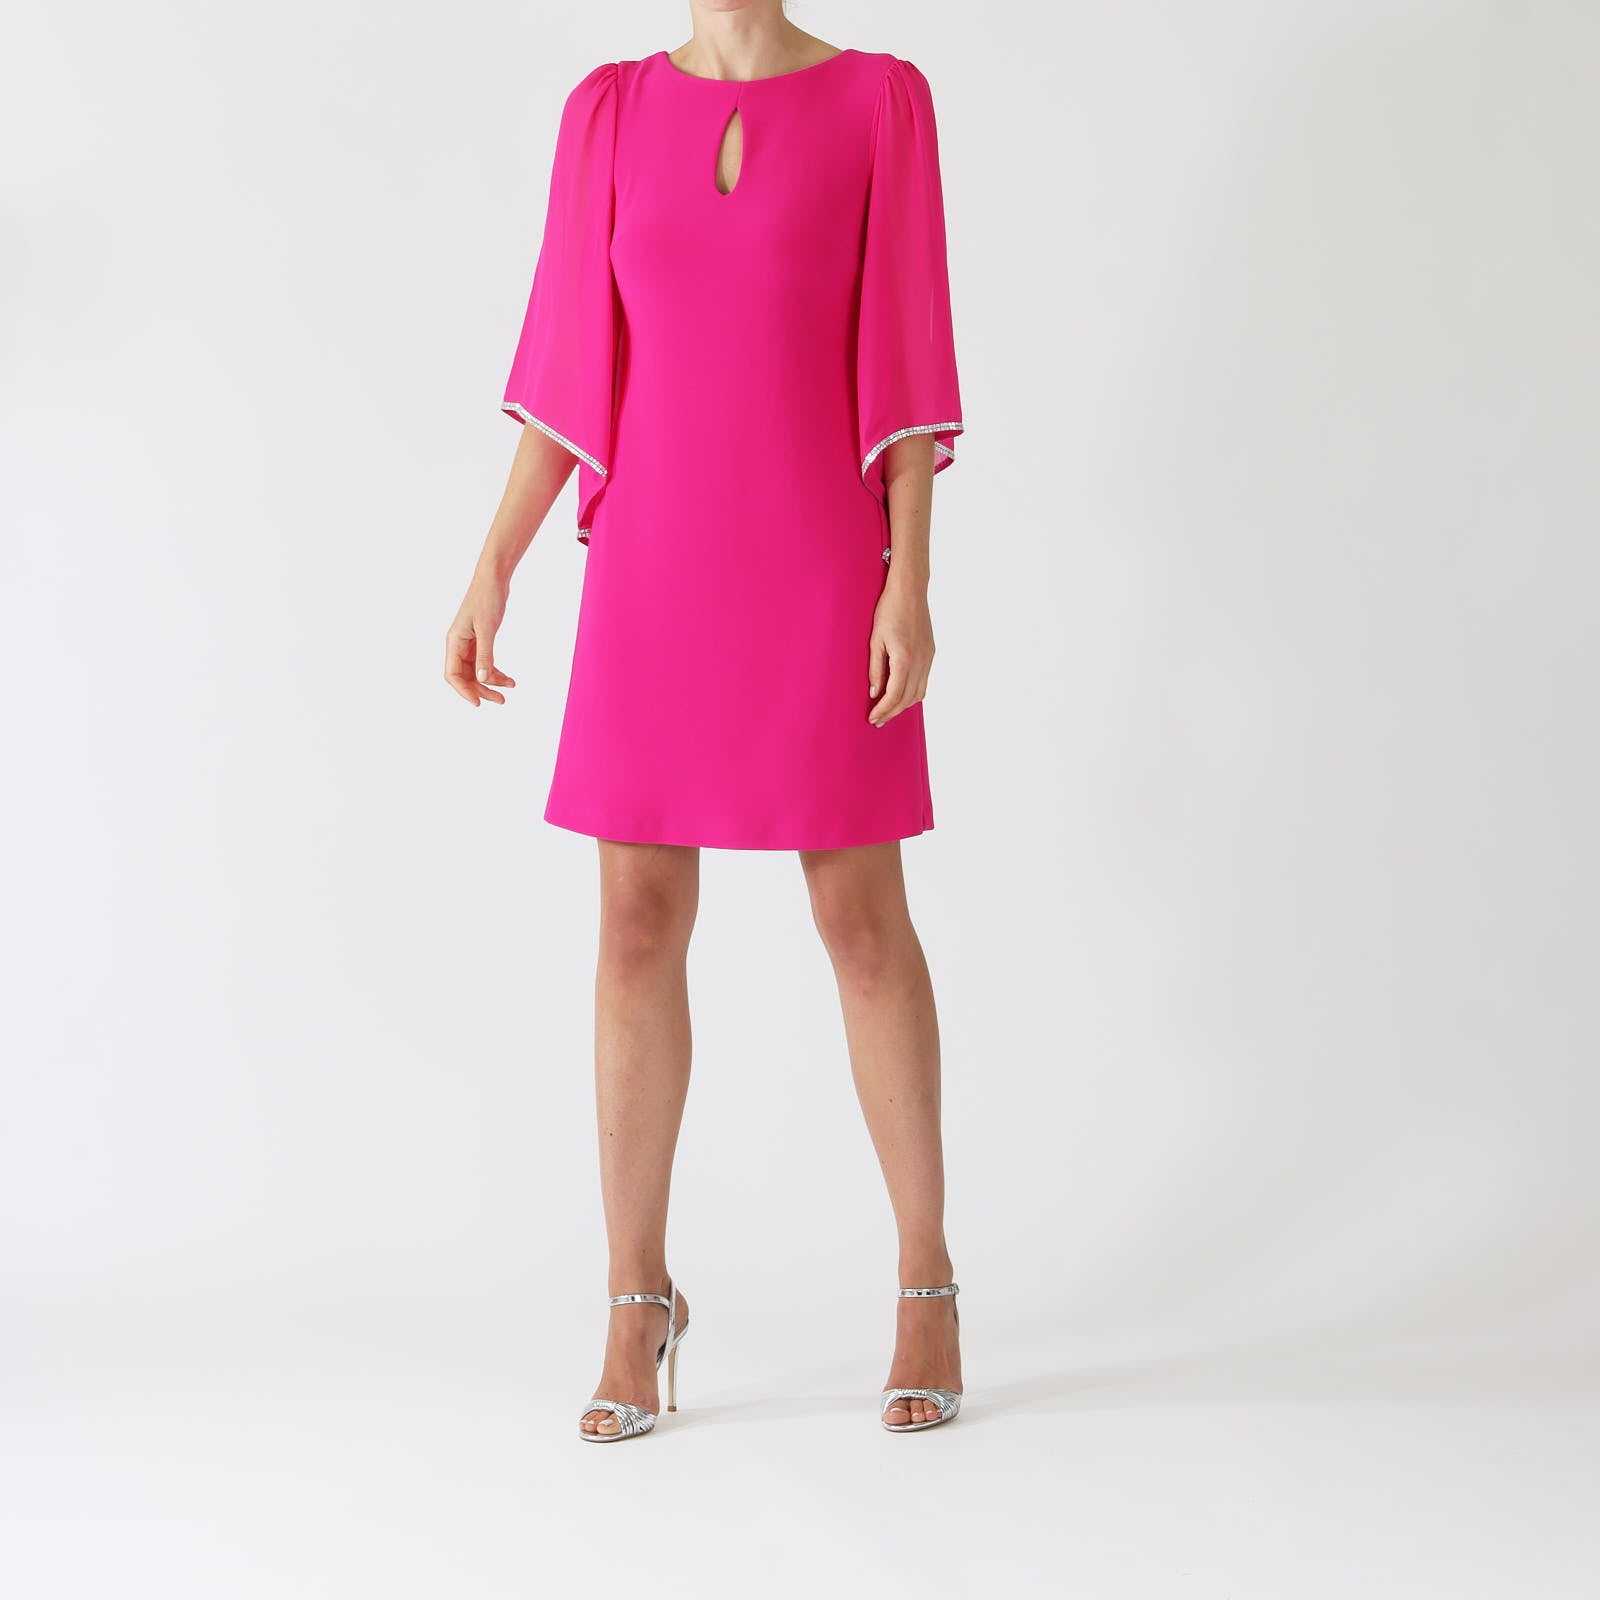 Shocking Pink Chiffon Sleeve Dress